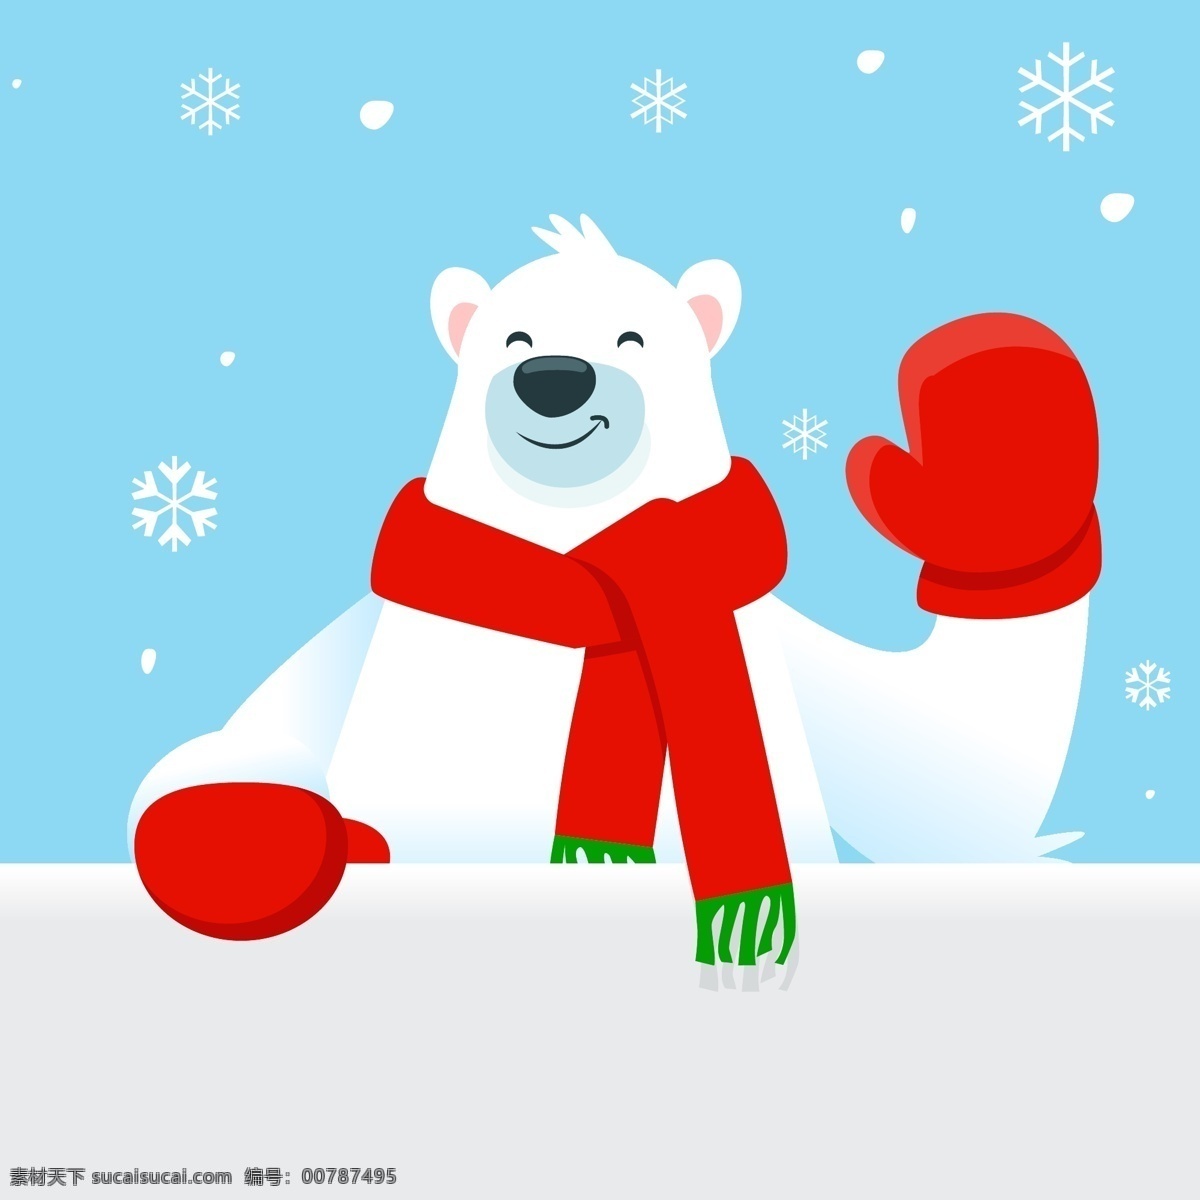 可爱 打招呼 北极熊 矢量 围巾 手套 雪花 冬季 文化艺术 节日庆祝